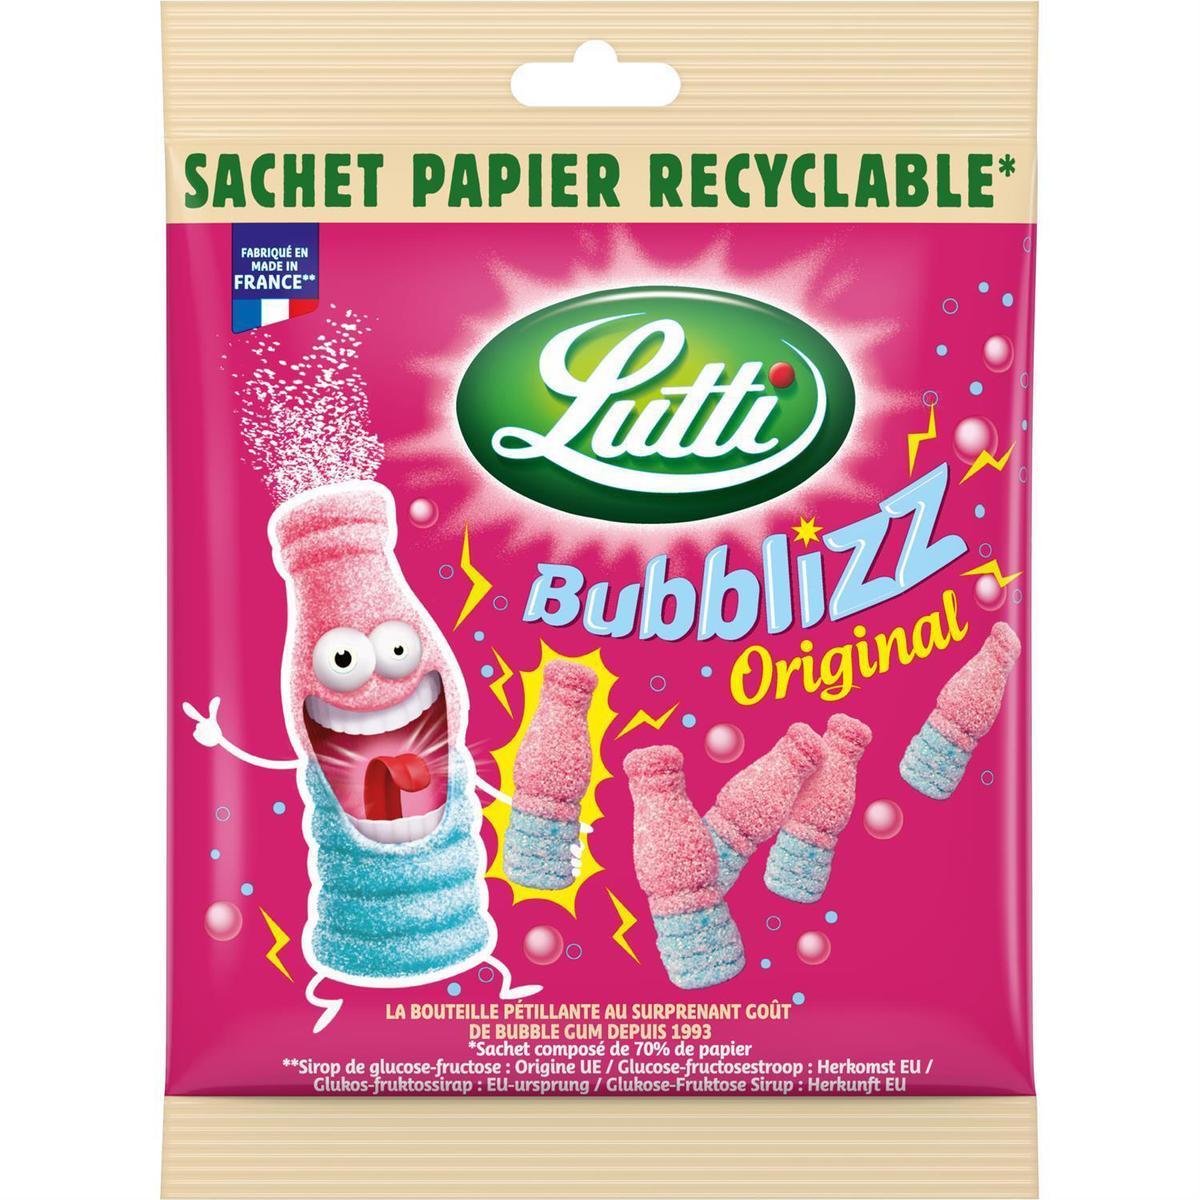 Achat / Vente Lutti Bubblizz dooo bonbons goût de bubble gum, 180g